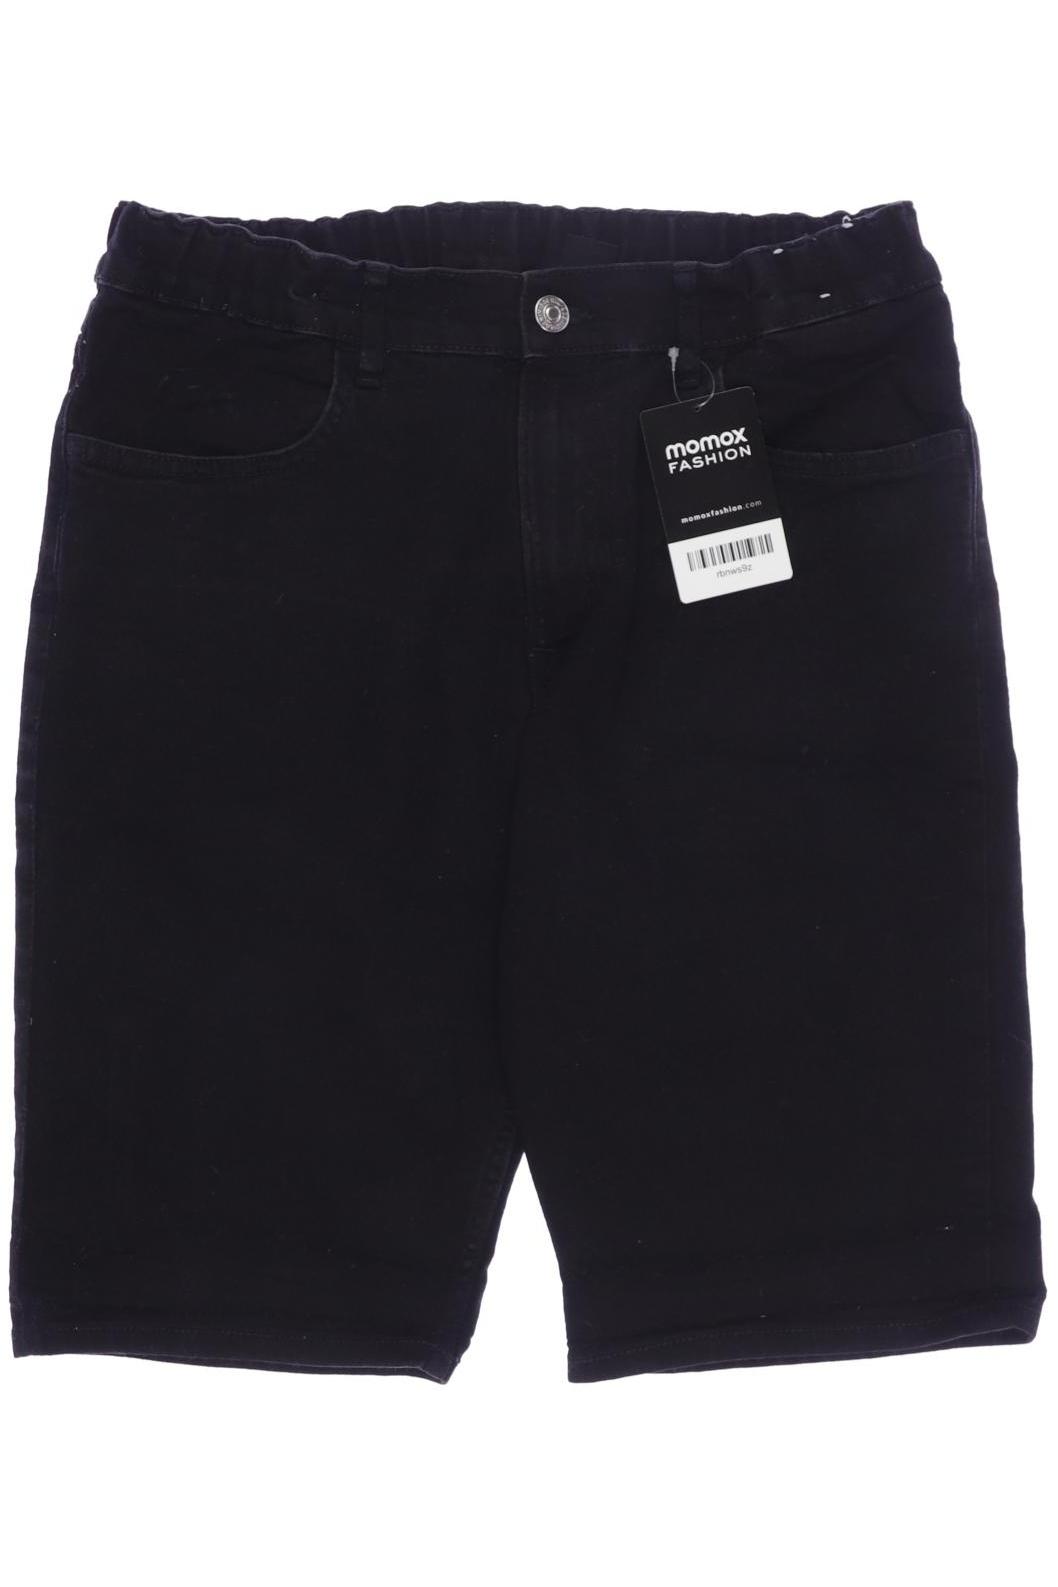 H&M Jungen Shorts, schwarz von H&M